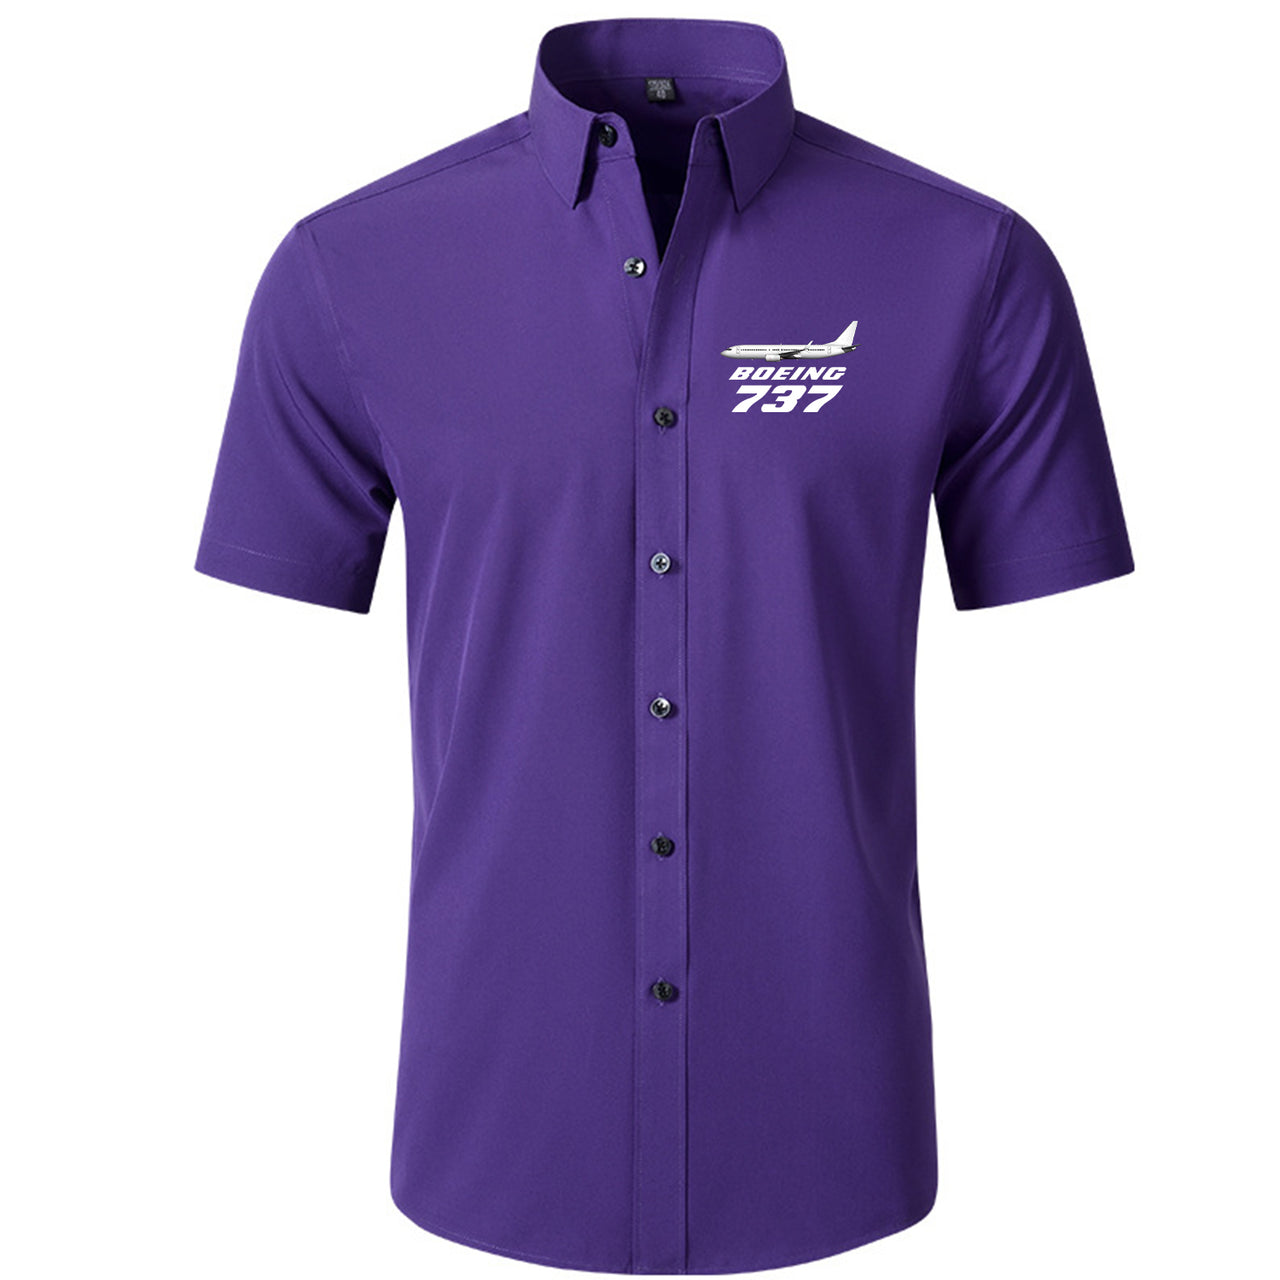 The Boeing 737 Designed Short Sleeve Shirts